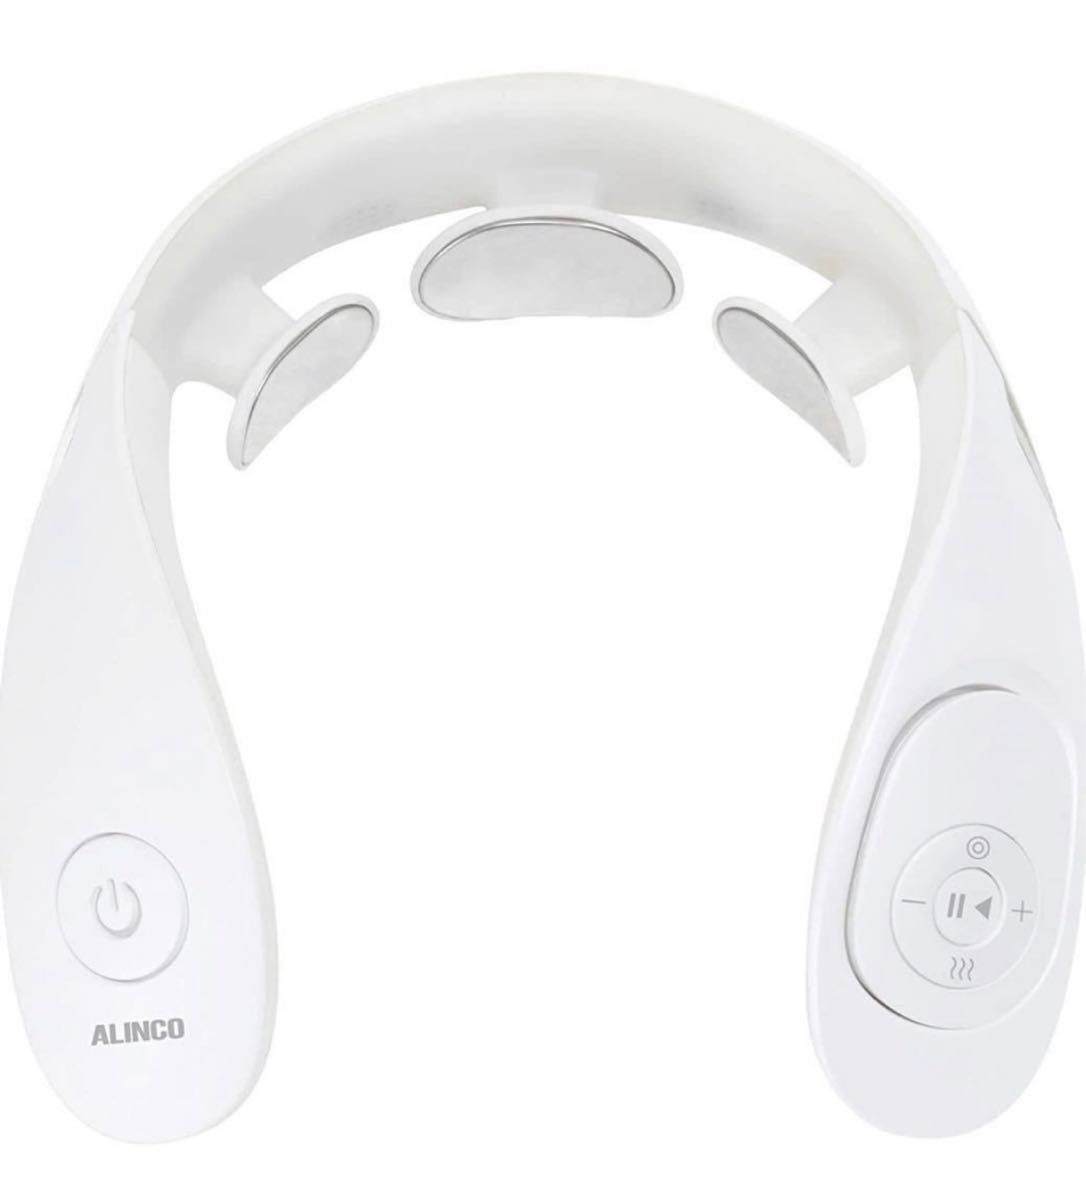 【新品未開封】ALINCO(アルインコ) Ele Neck エレネック USB充電式 ヒーター機能搭載 音声ガイダンス 